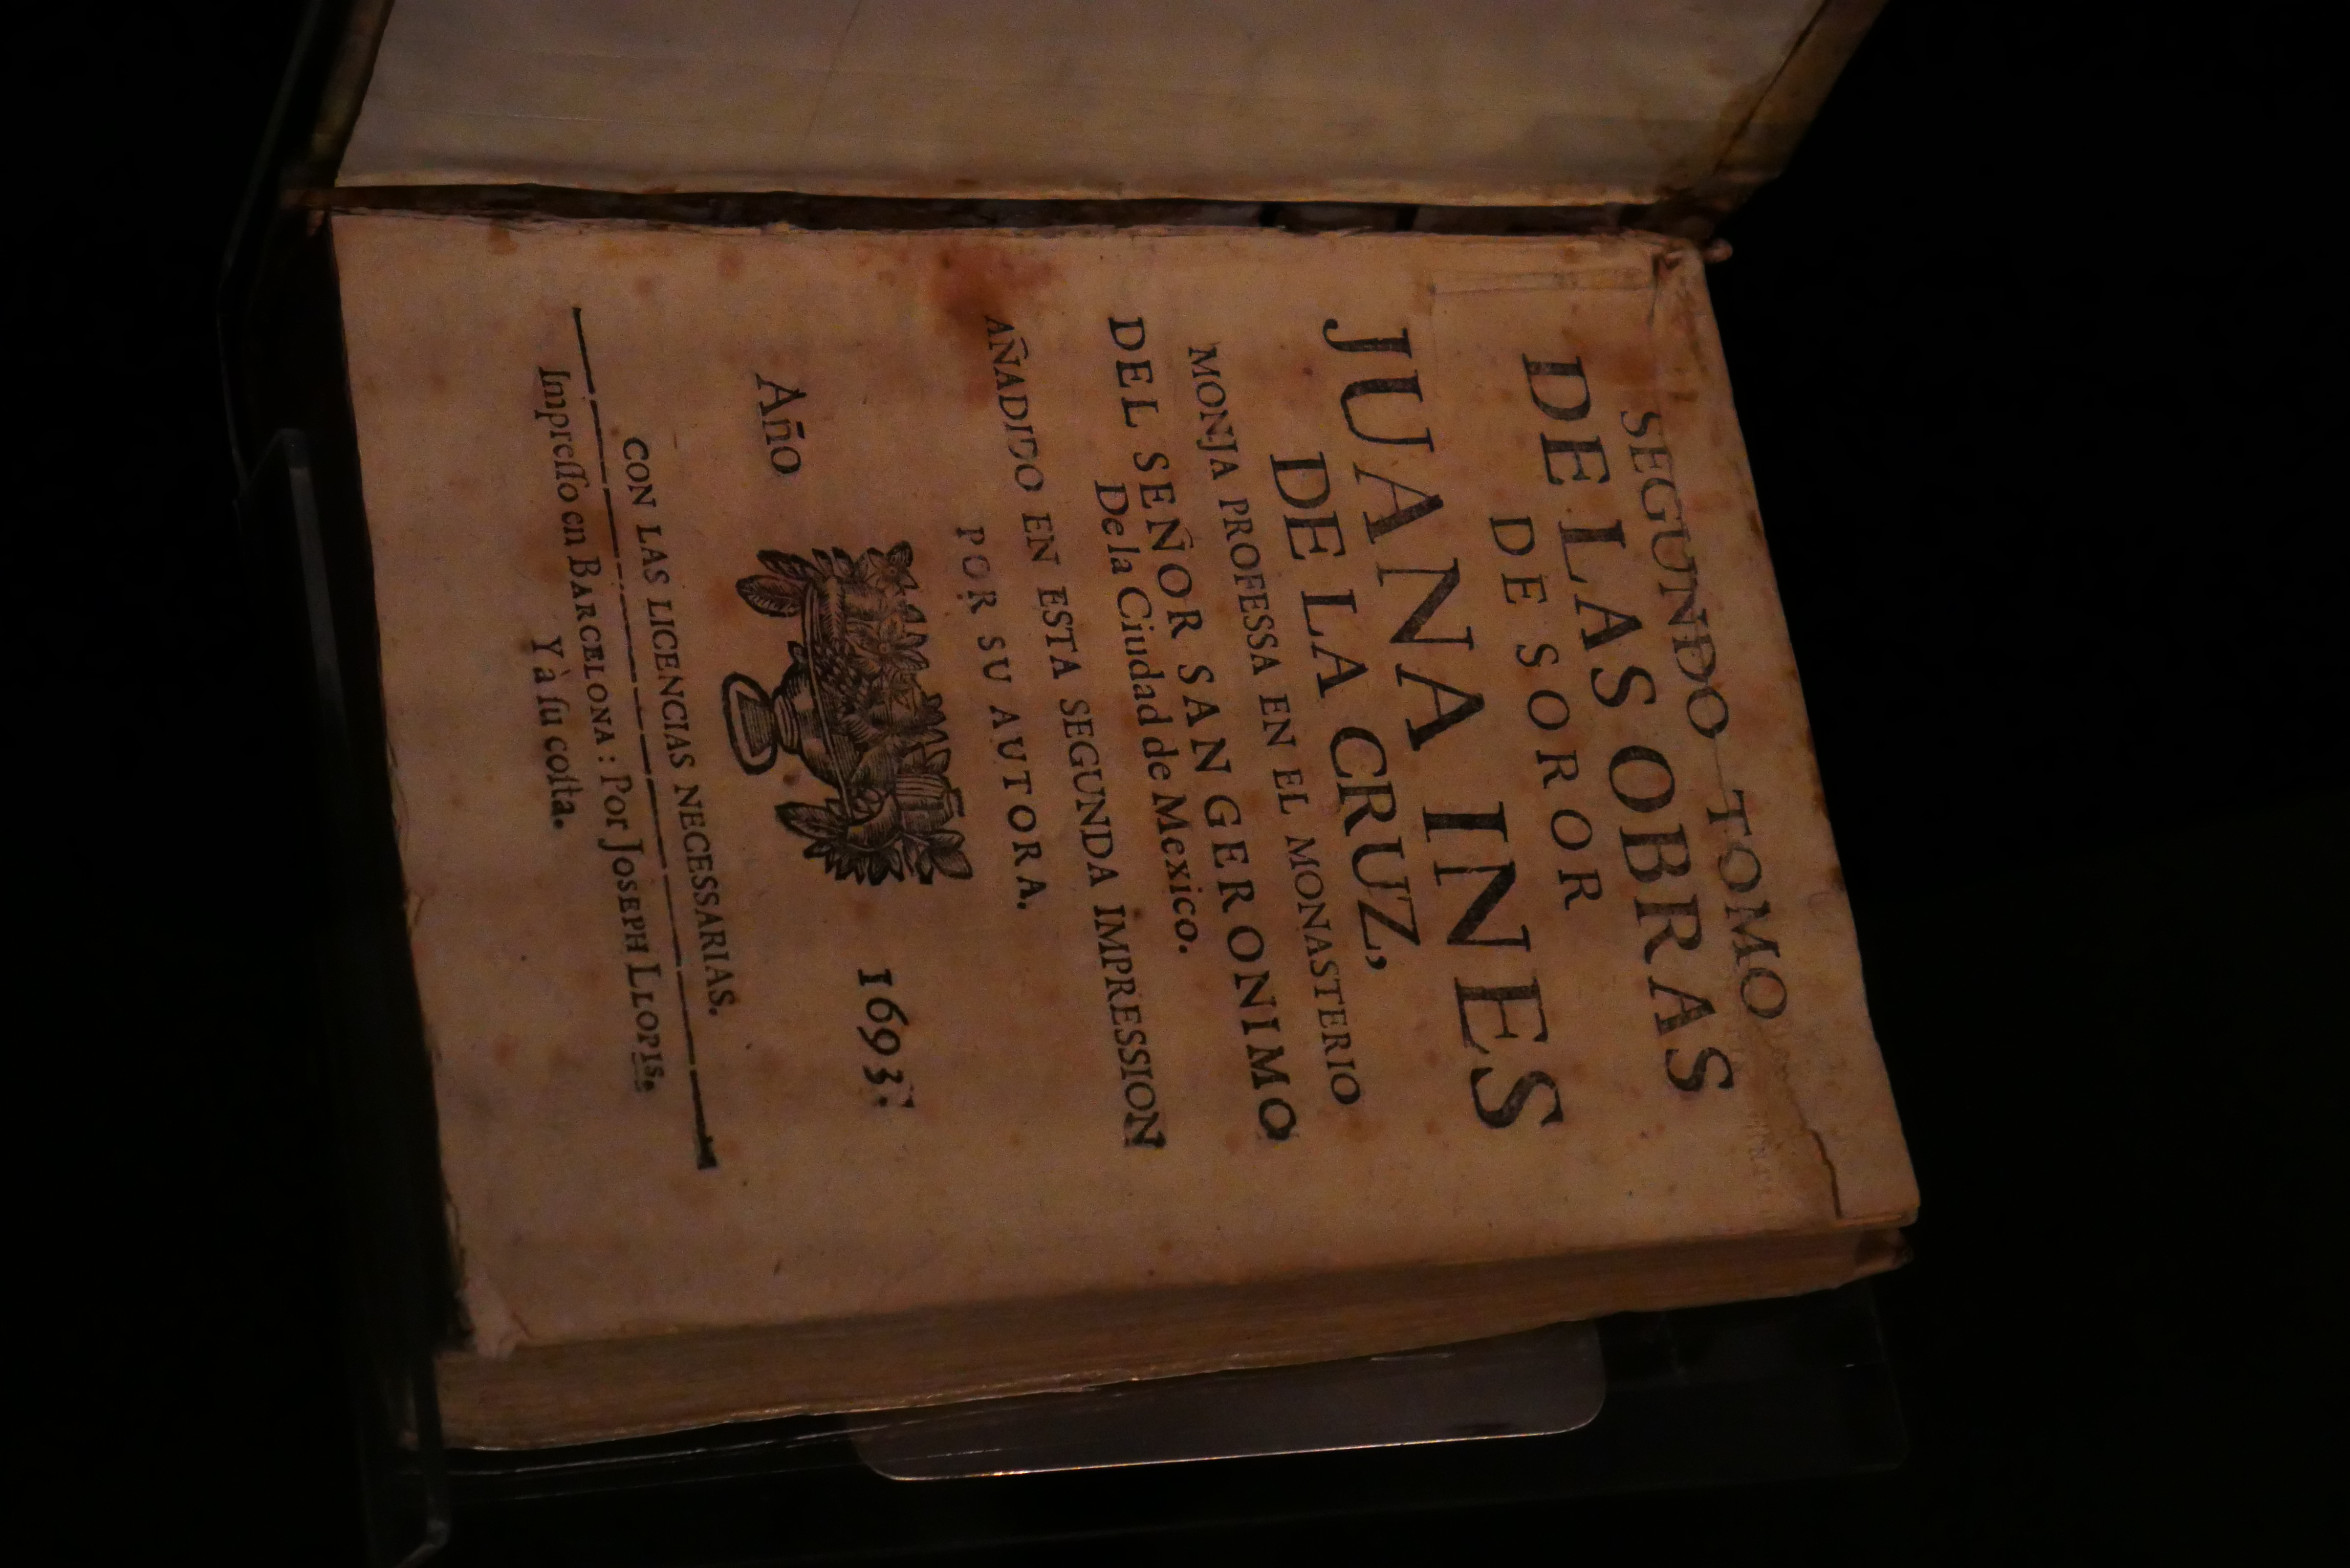 ''Libro de obras poéticas de Sor Juana Inés de la Cruz'' (1693) in has Museo Internacional del Barroco